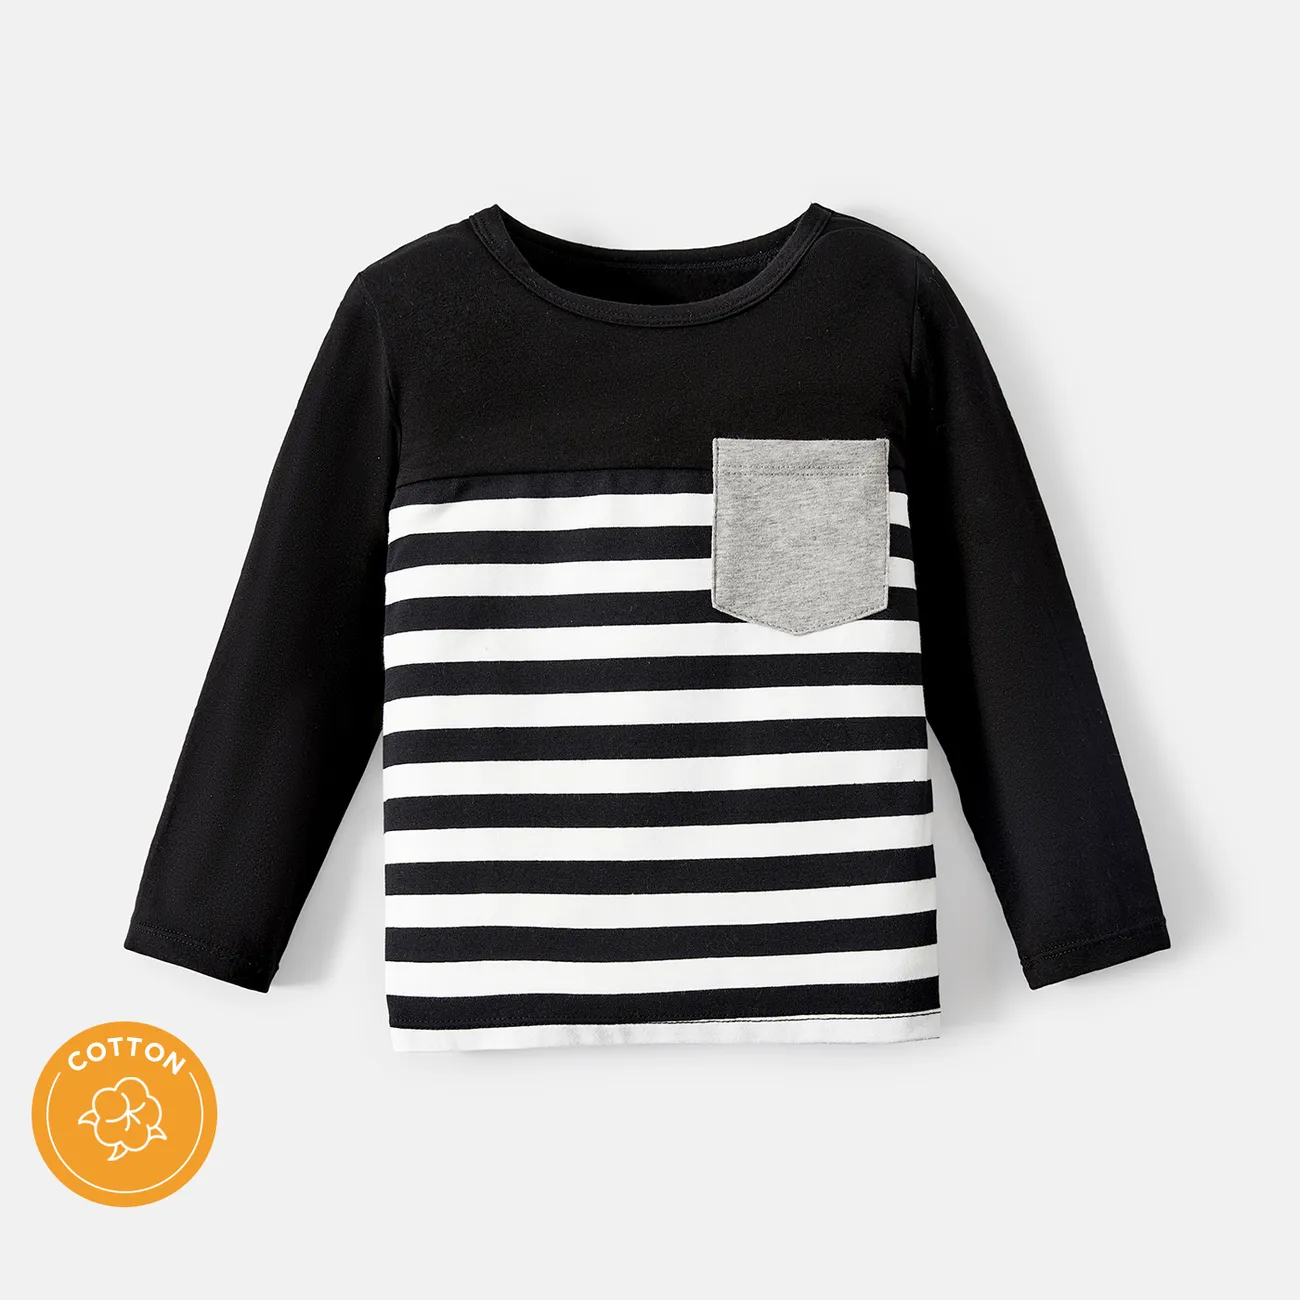 Langarm-T-Shirt aus Baumwolle mit Streifentaschendesign für Kleinkinder/Kinderjungen Farbblock big image 1